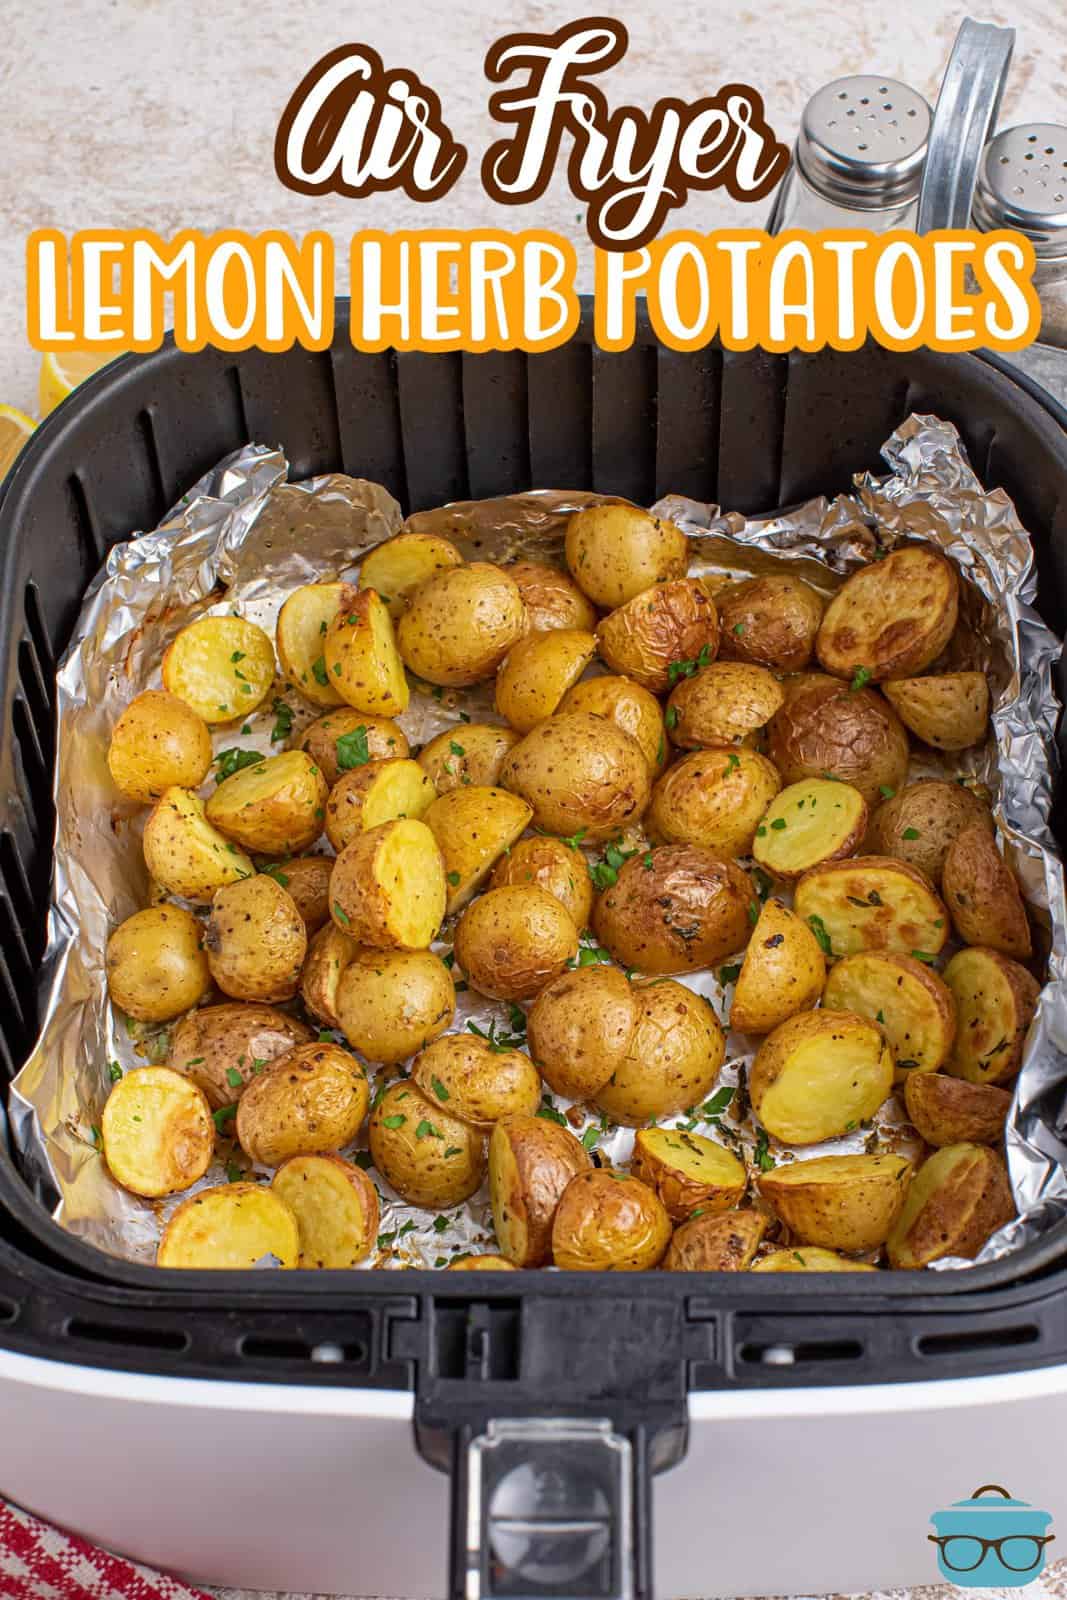 Looking down on Lemon Herb Potatoes in an Air Fryer basket.